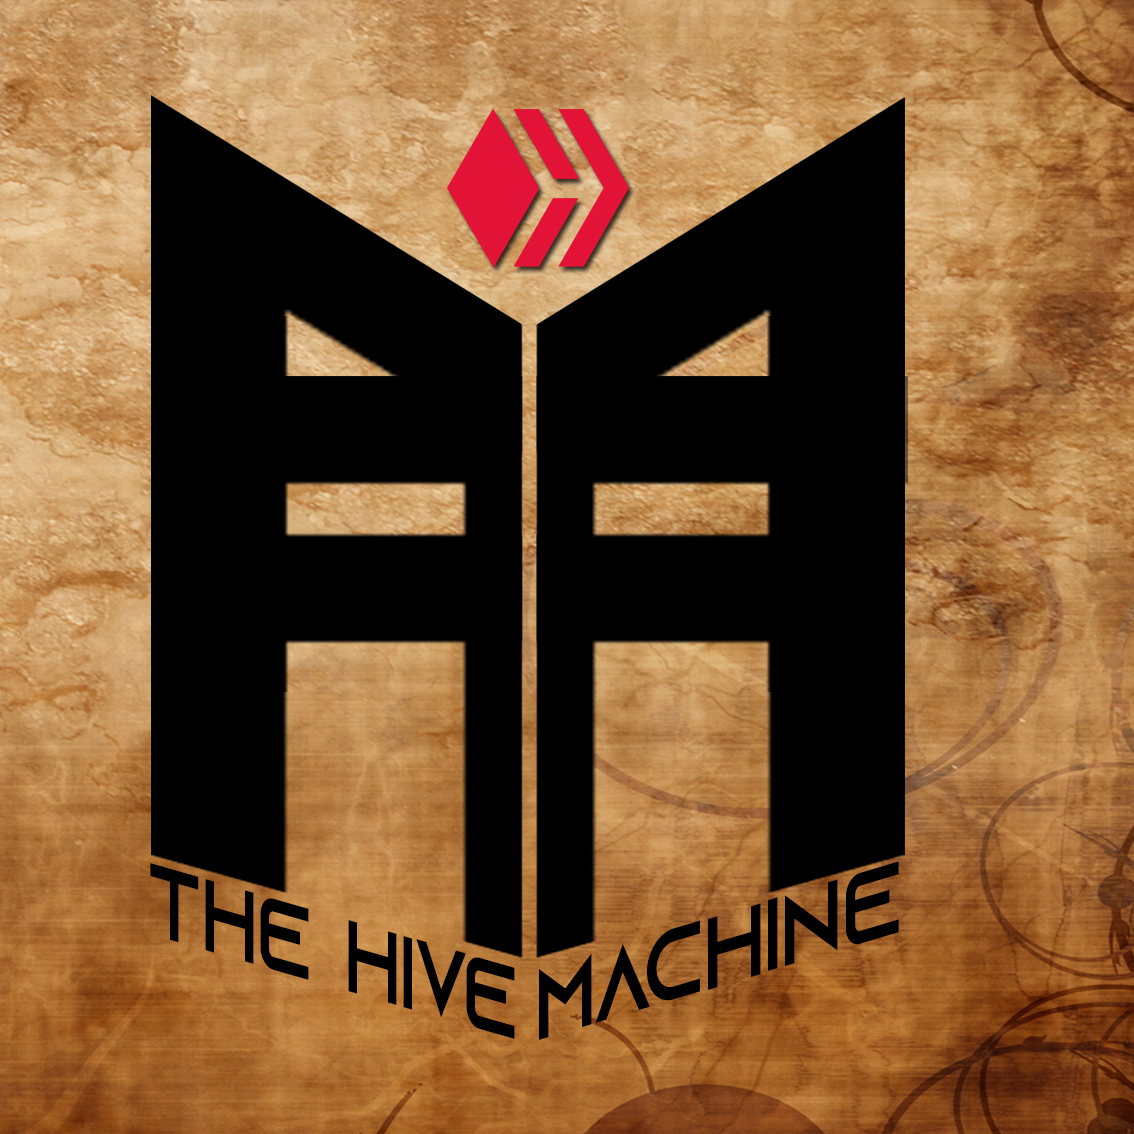 The Hive machine con fondo.jpg